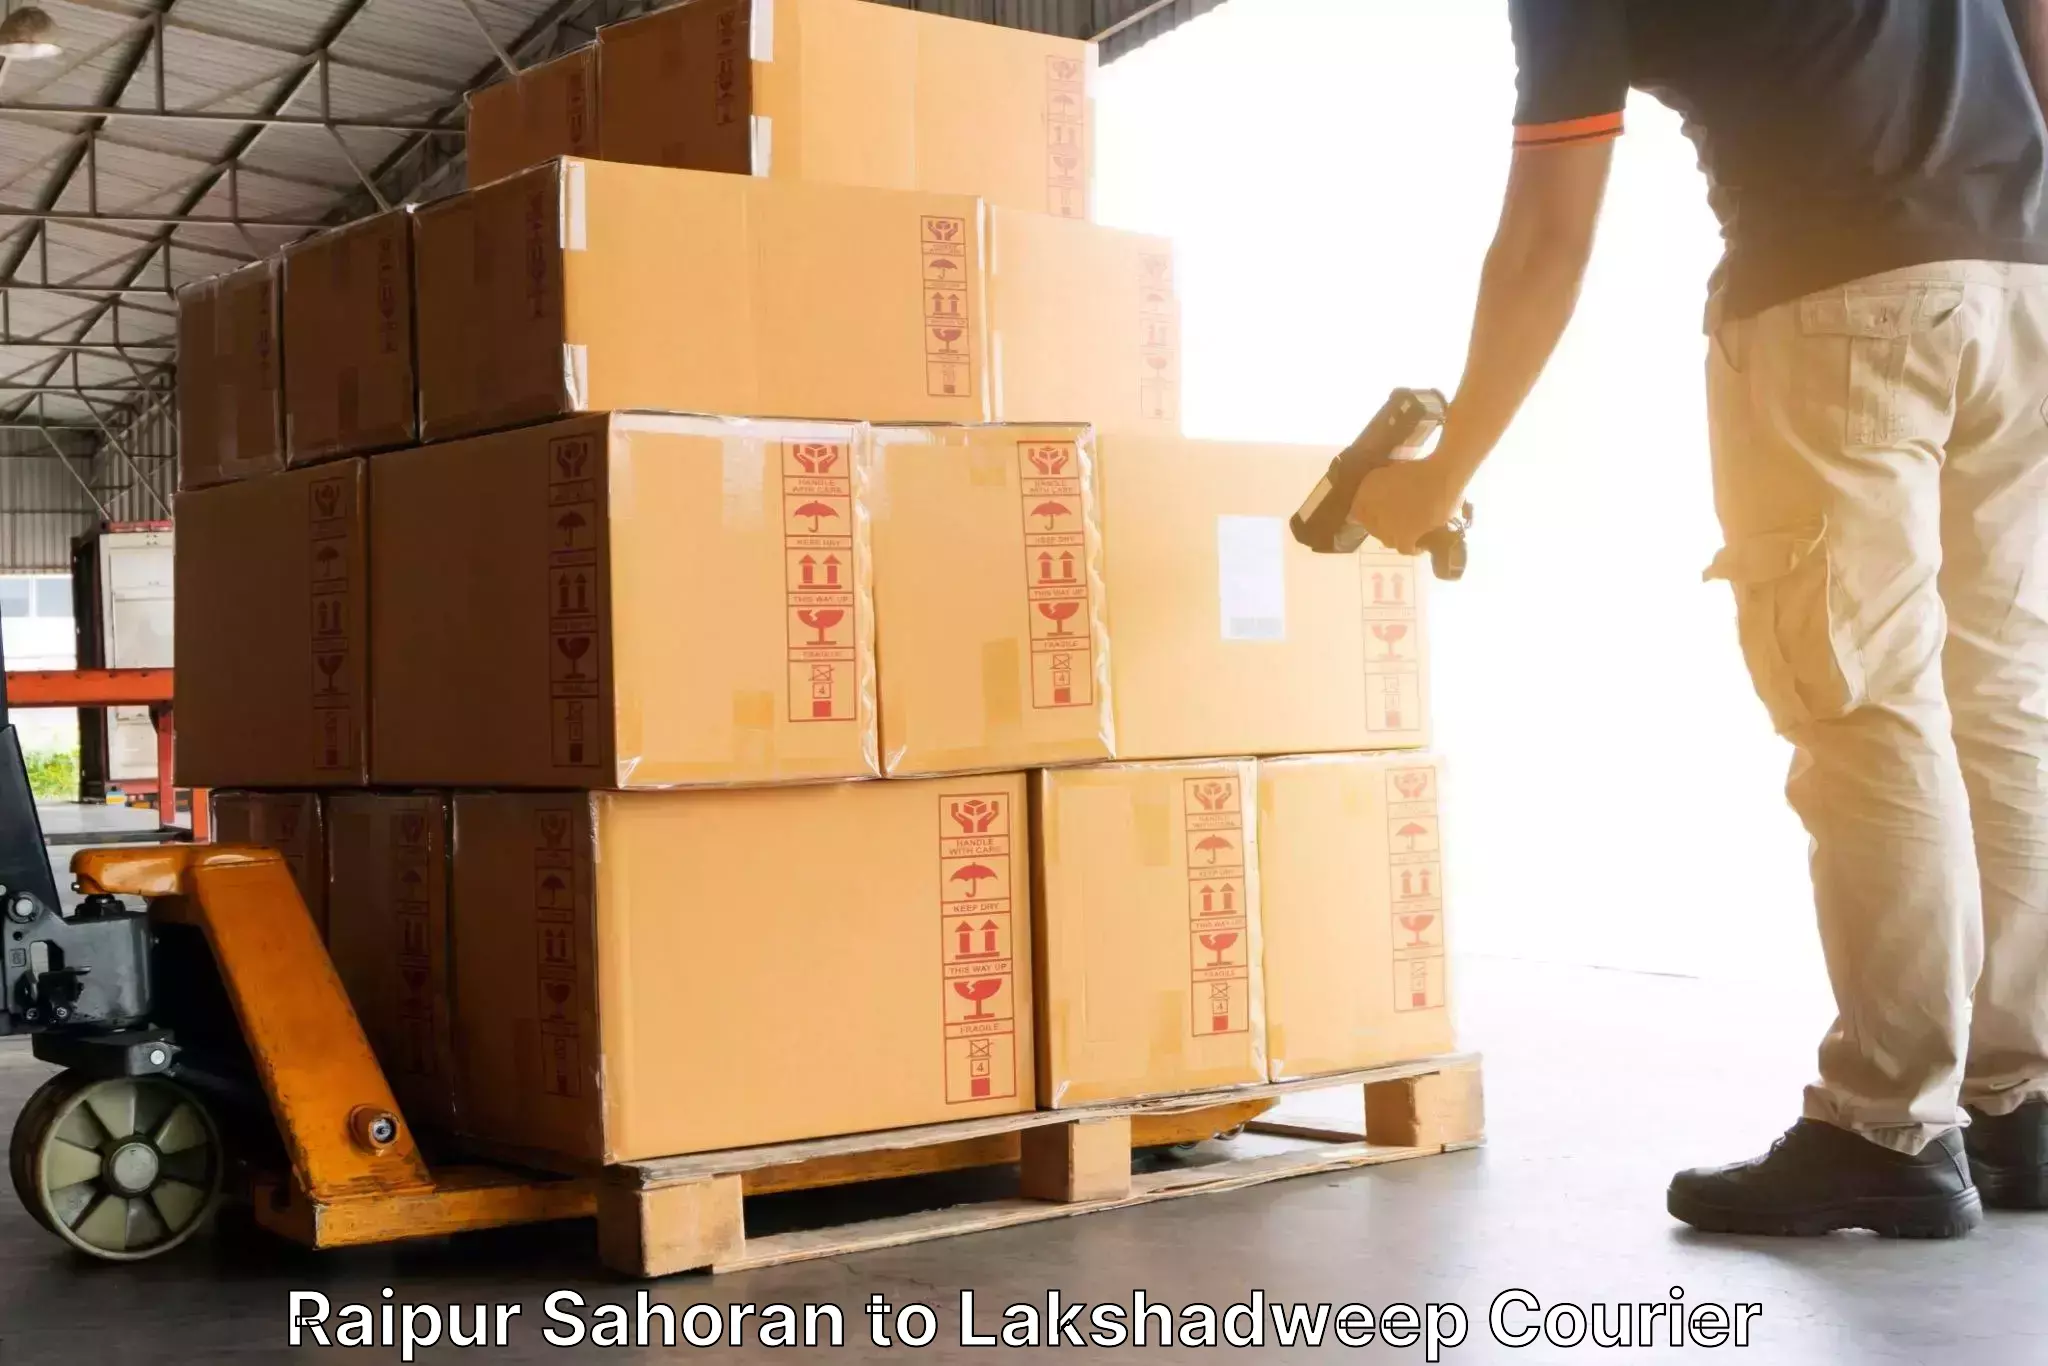 Automated shipping processes Raipur Sahoran to Lakshadweep